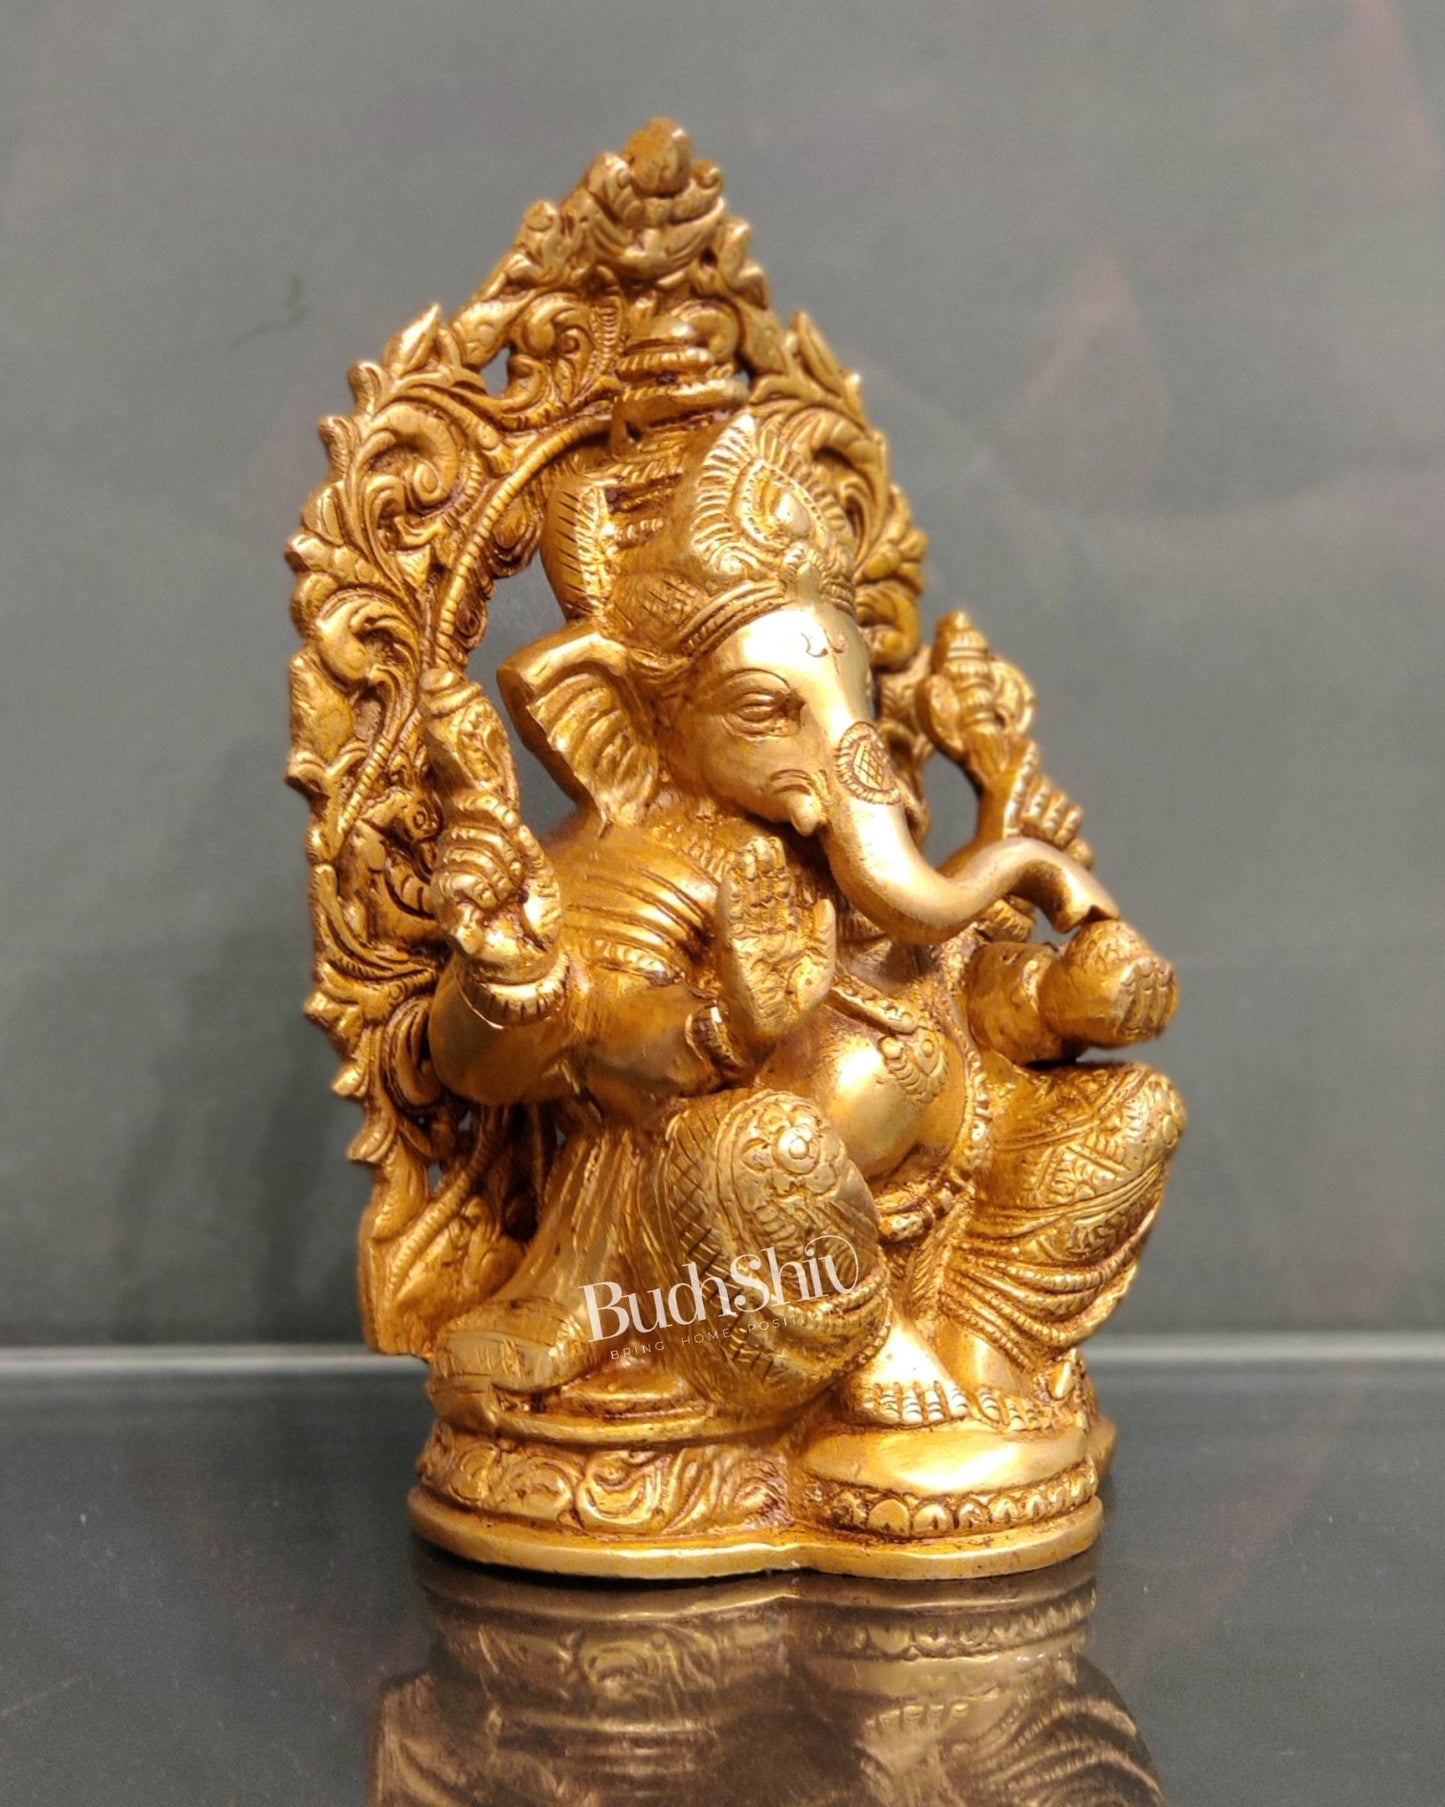 Ganesha on a throne brass idol 7 inch - Budhshiv.com